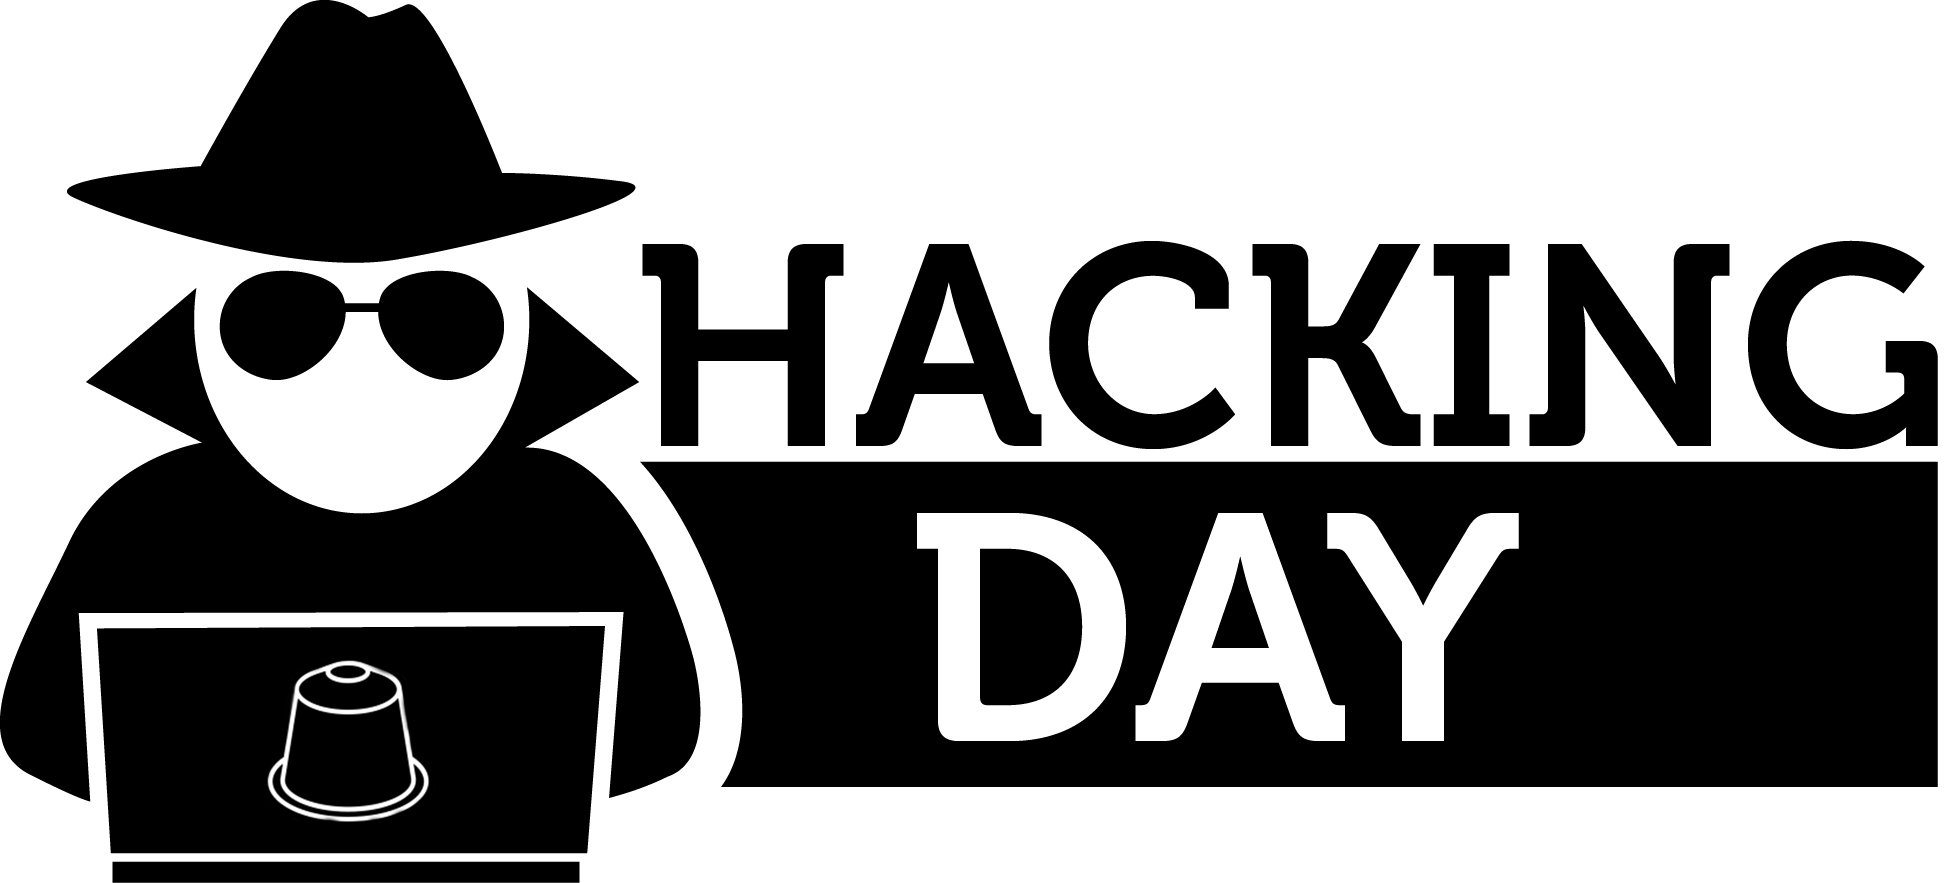 Logotip Hacking Day